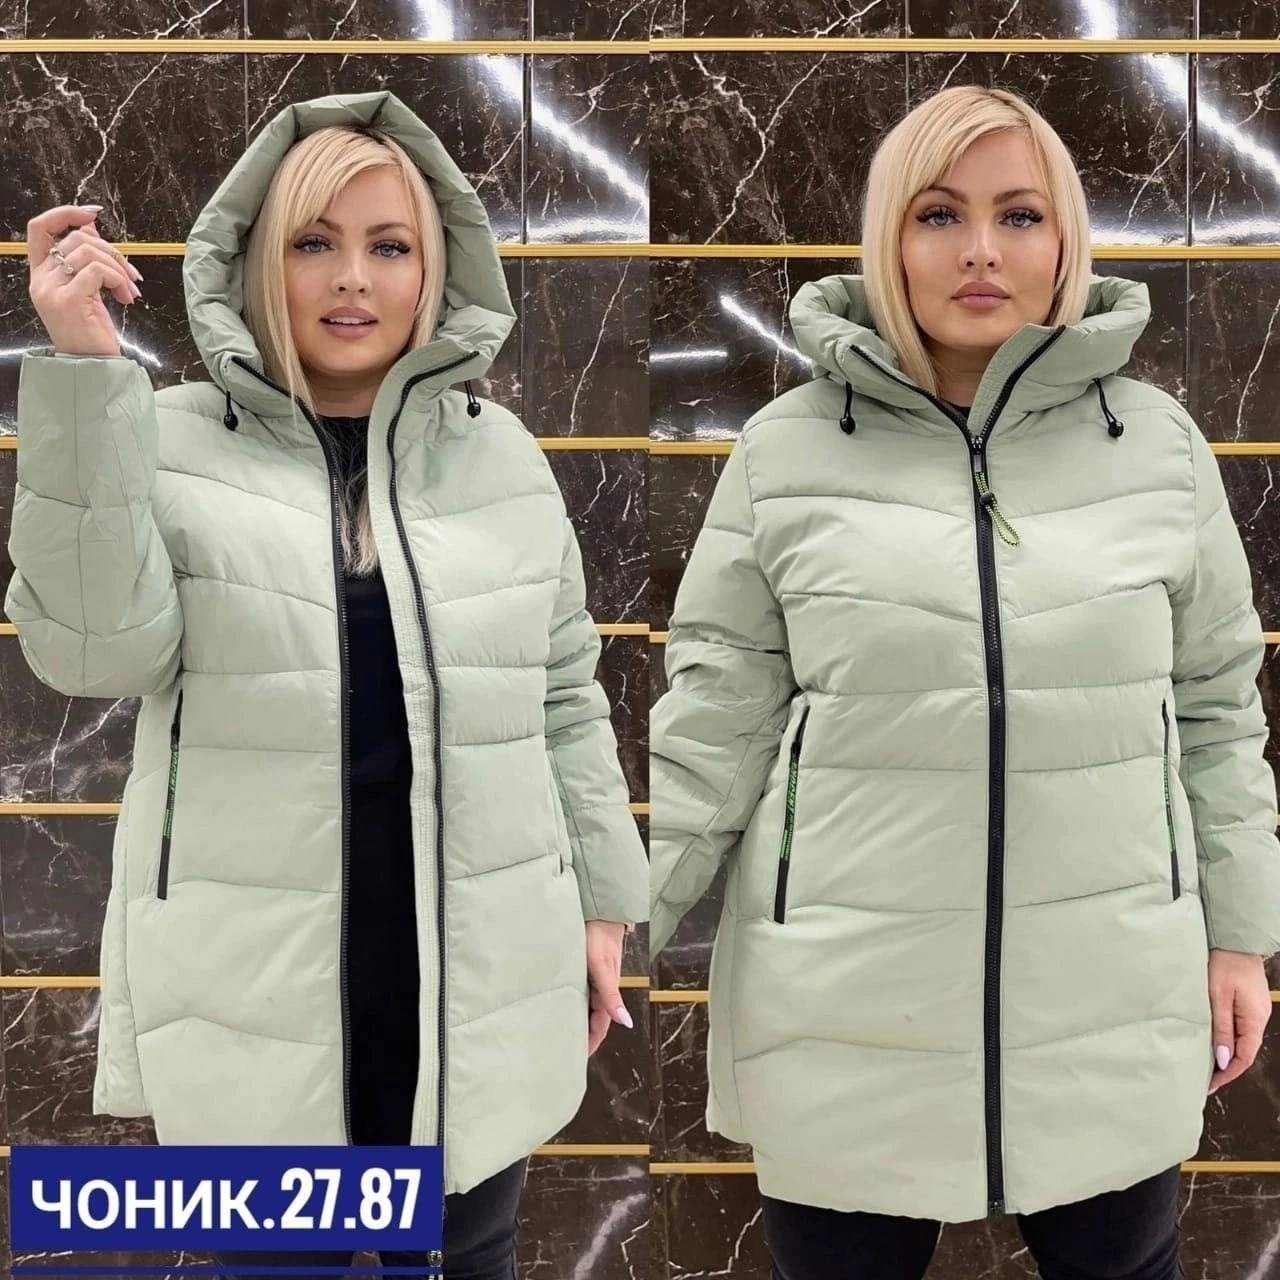 Зимняя женская парка: как выбрать тёплую и модную одежду с мехом для холодной зимы